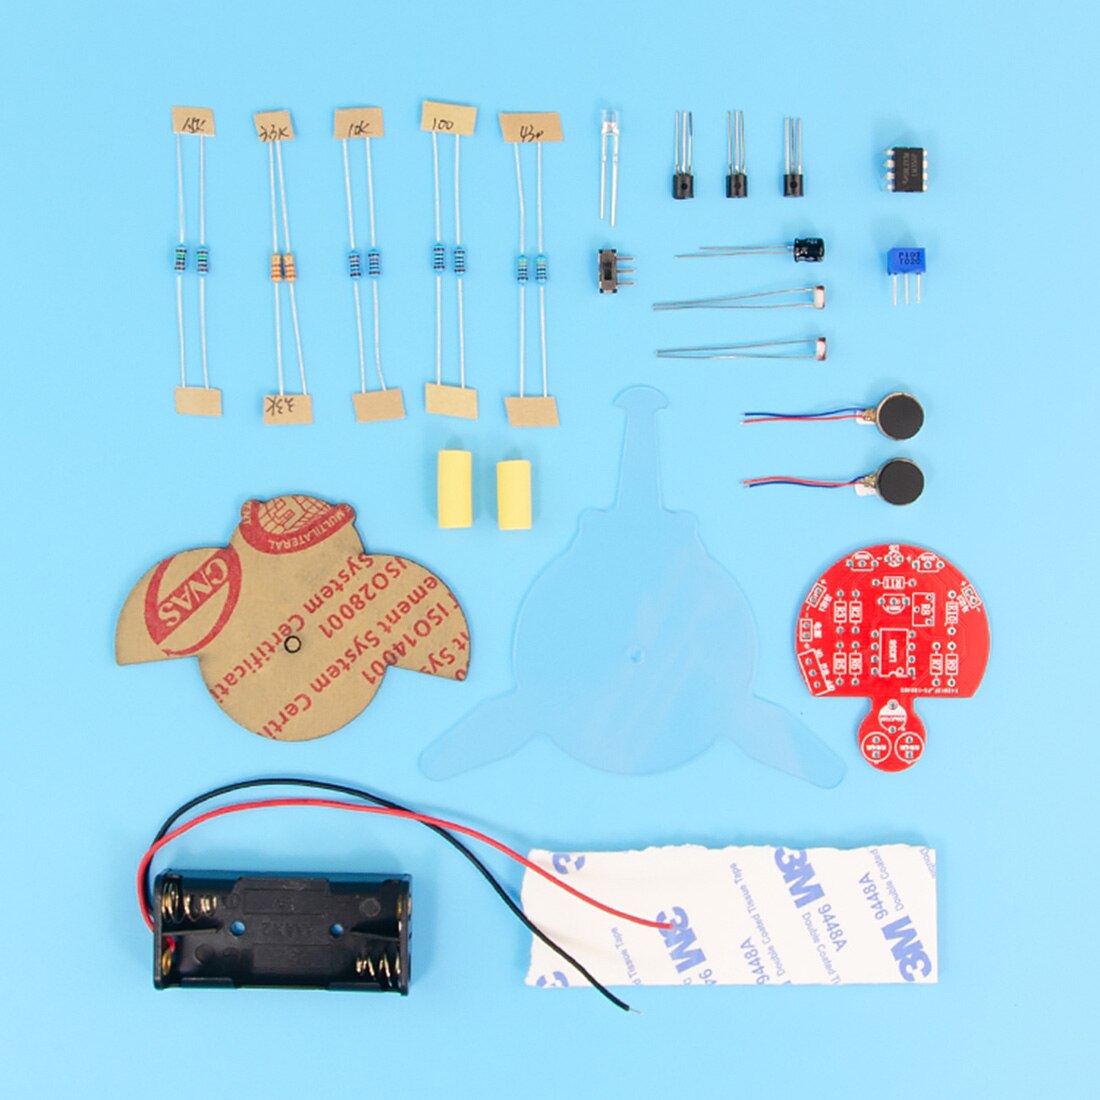 Maker diy fireworm glowworm steam fotografisk robot pædagogisk kit med bln og fotomodstand til børns pædagogiske legetøj